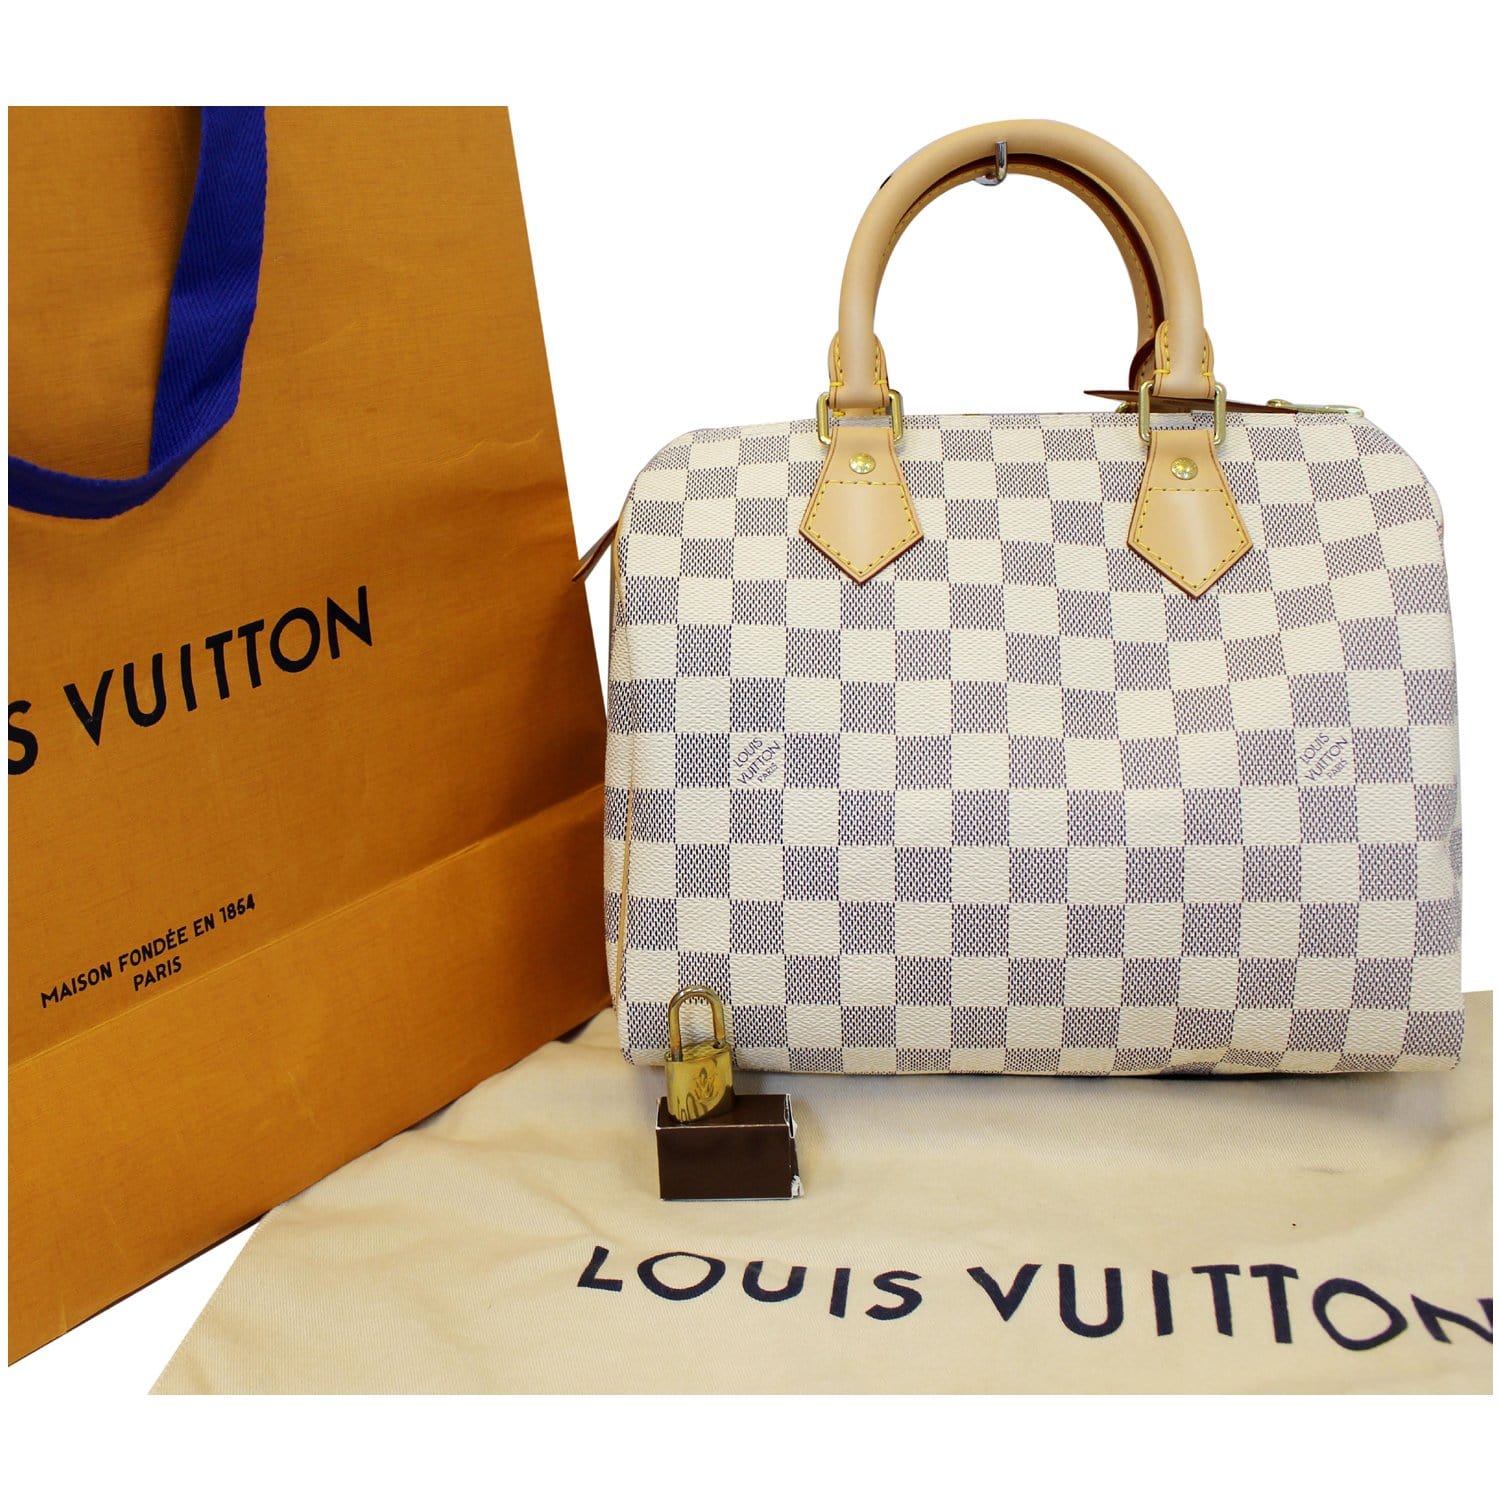 Louis Vuitton - Speedy B25 in Damier Azur - Reetzy